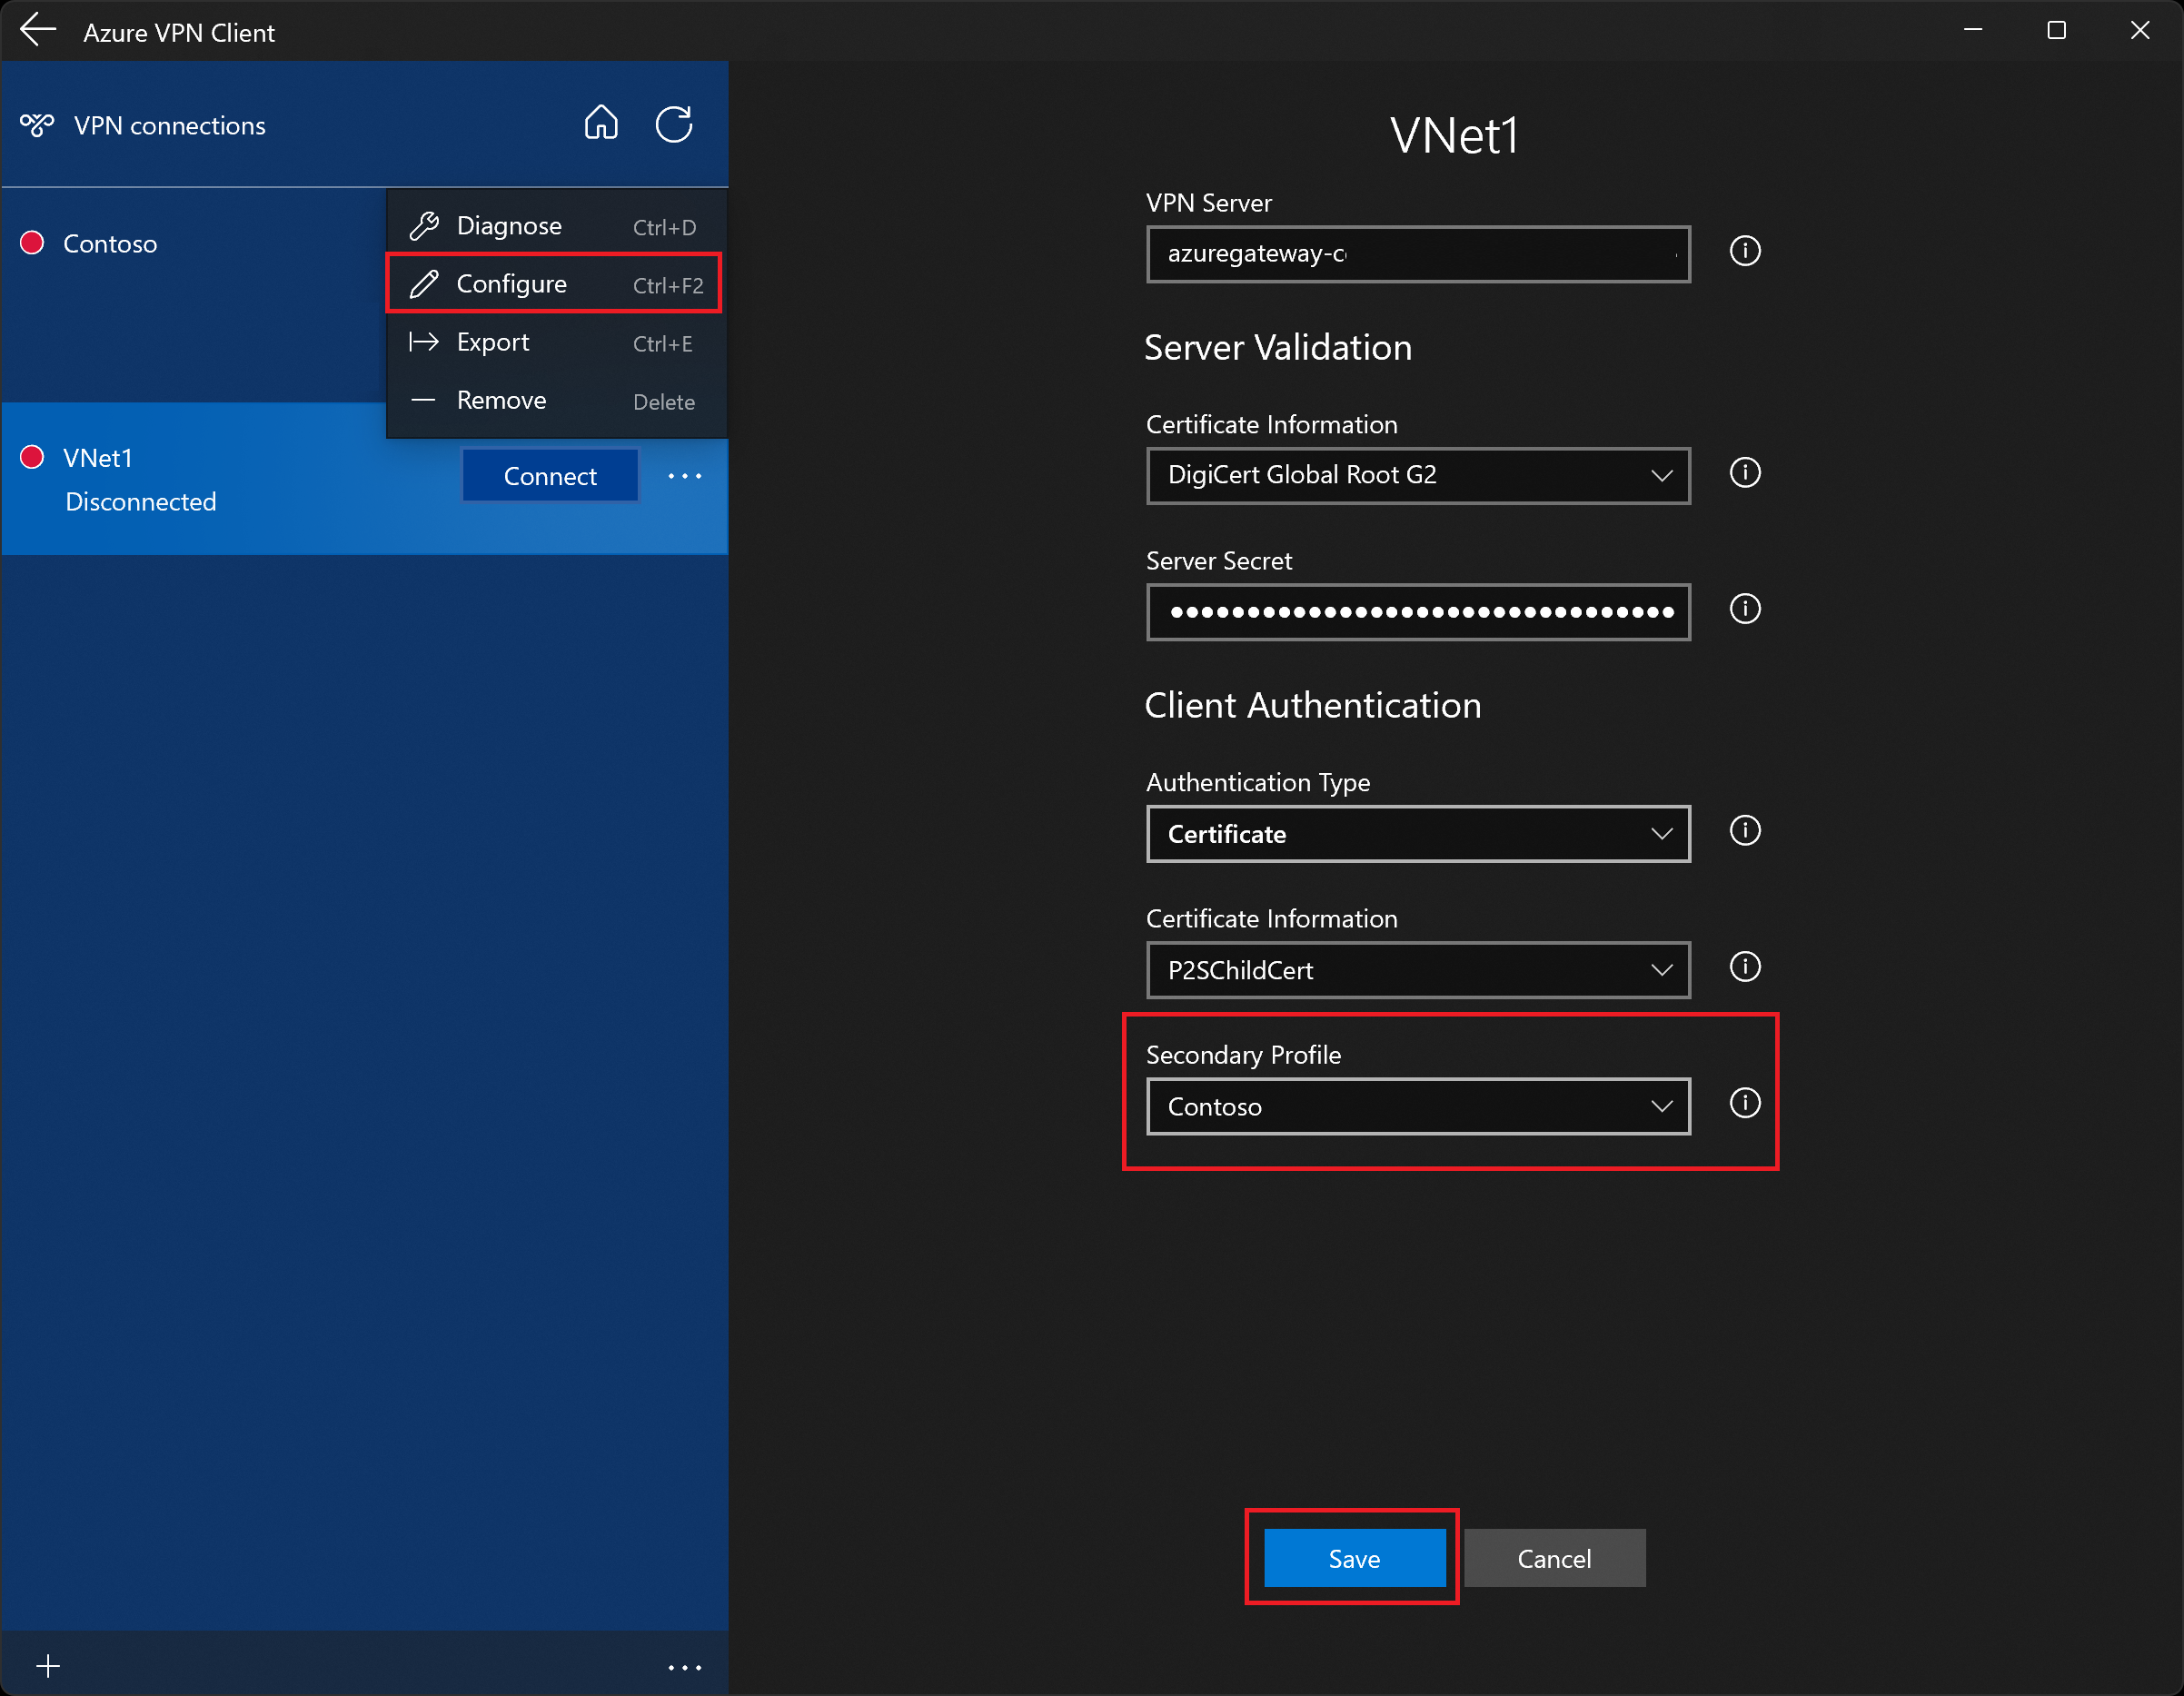 Captura de pantalla que muestra la página de configuración del perfil de cliente VPN de Azure con un perfil secundario.